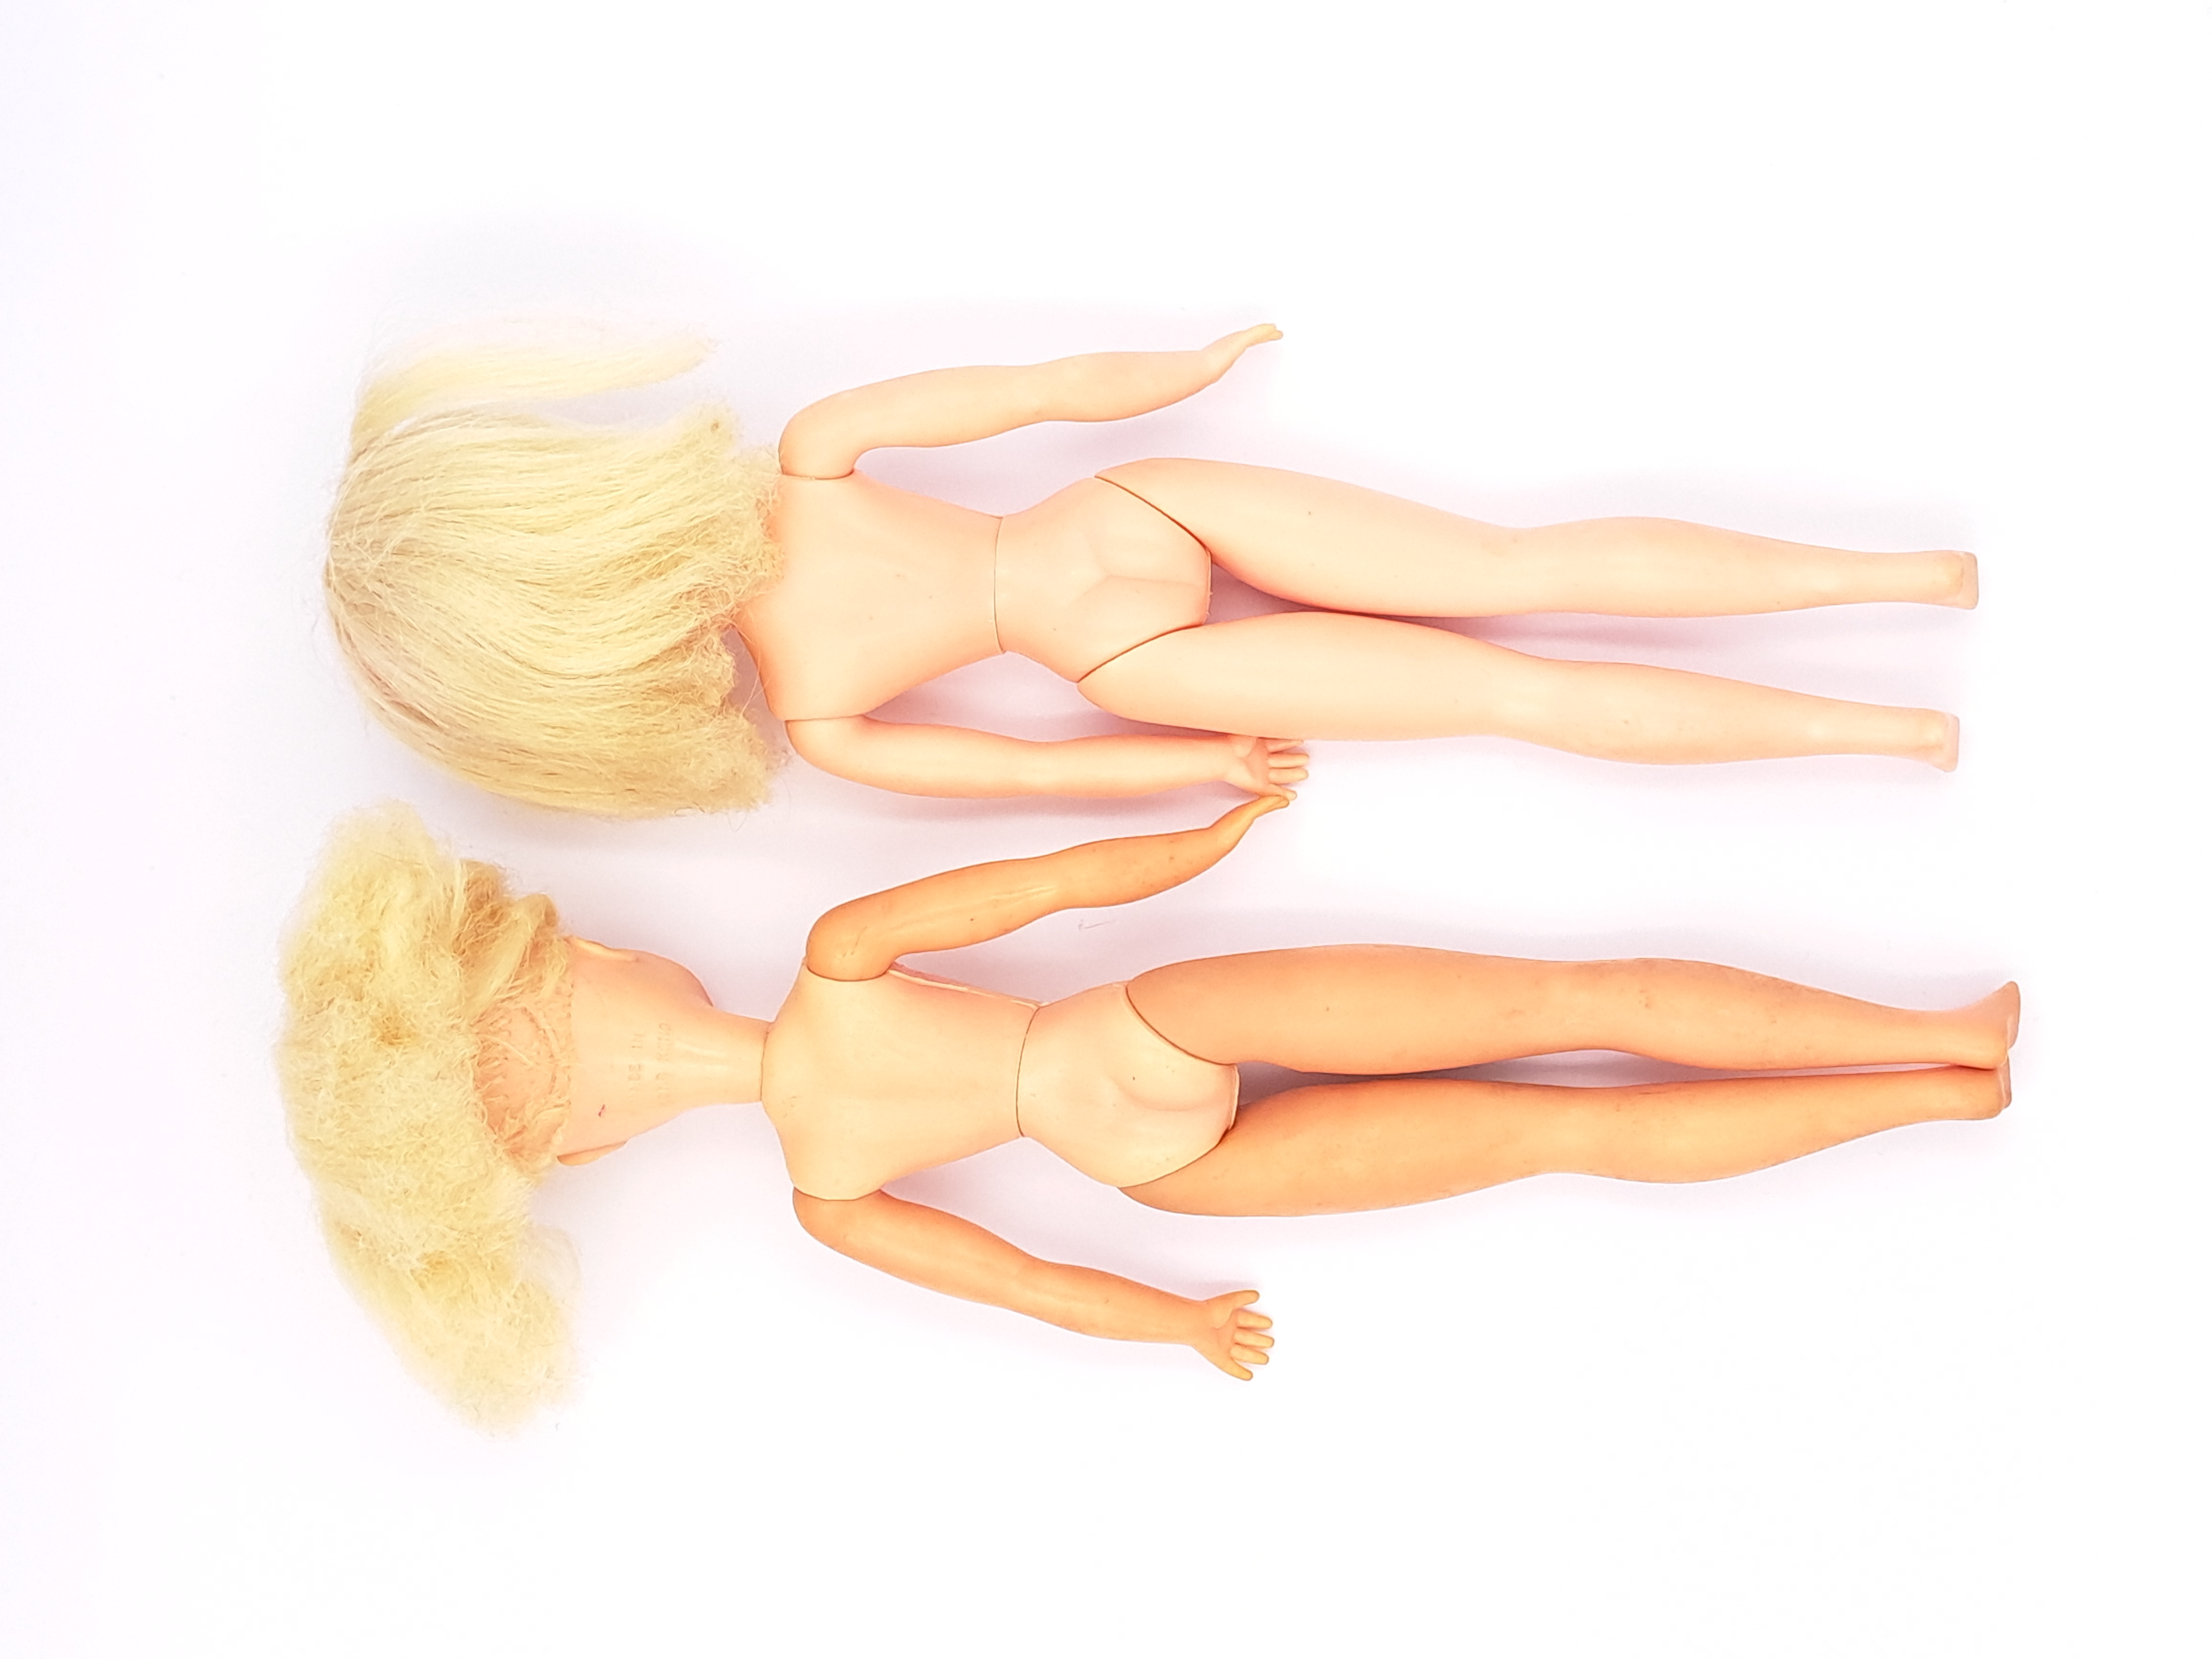 Pedigree Sindy pair of vintage side part hair dolls, 1969, blonde - Image 4 of 4